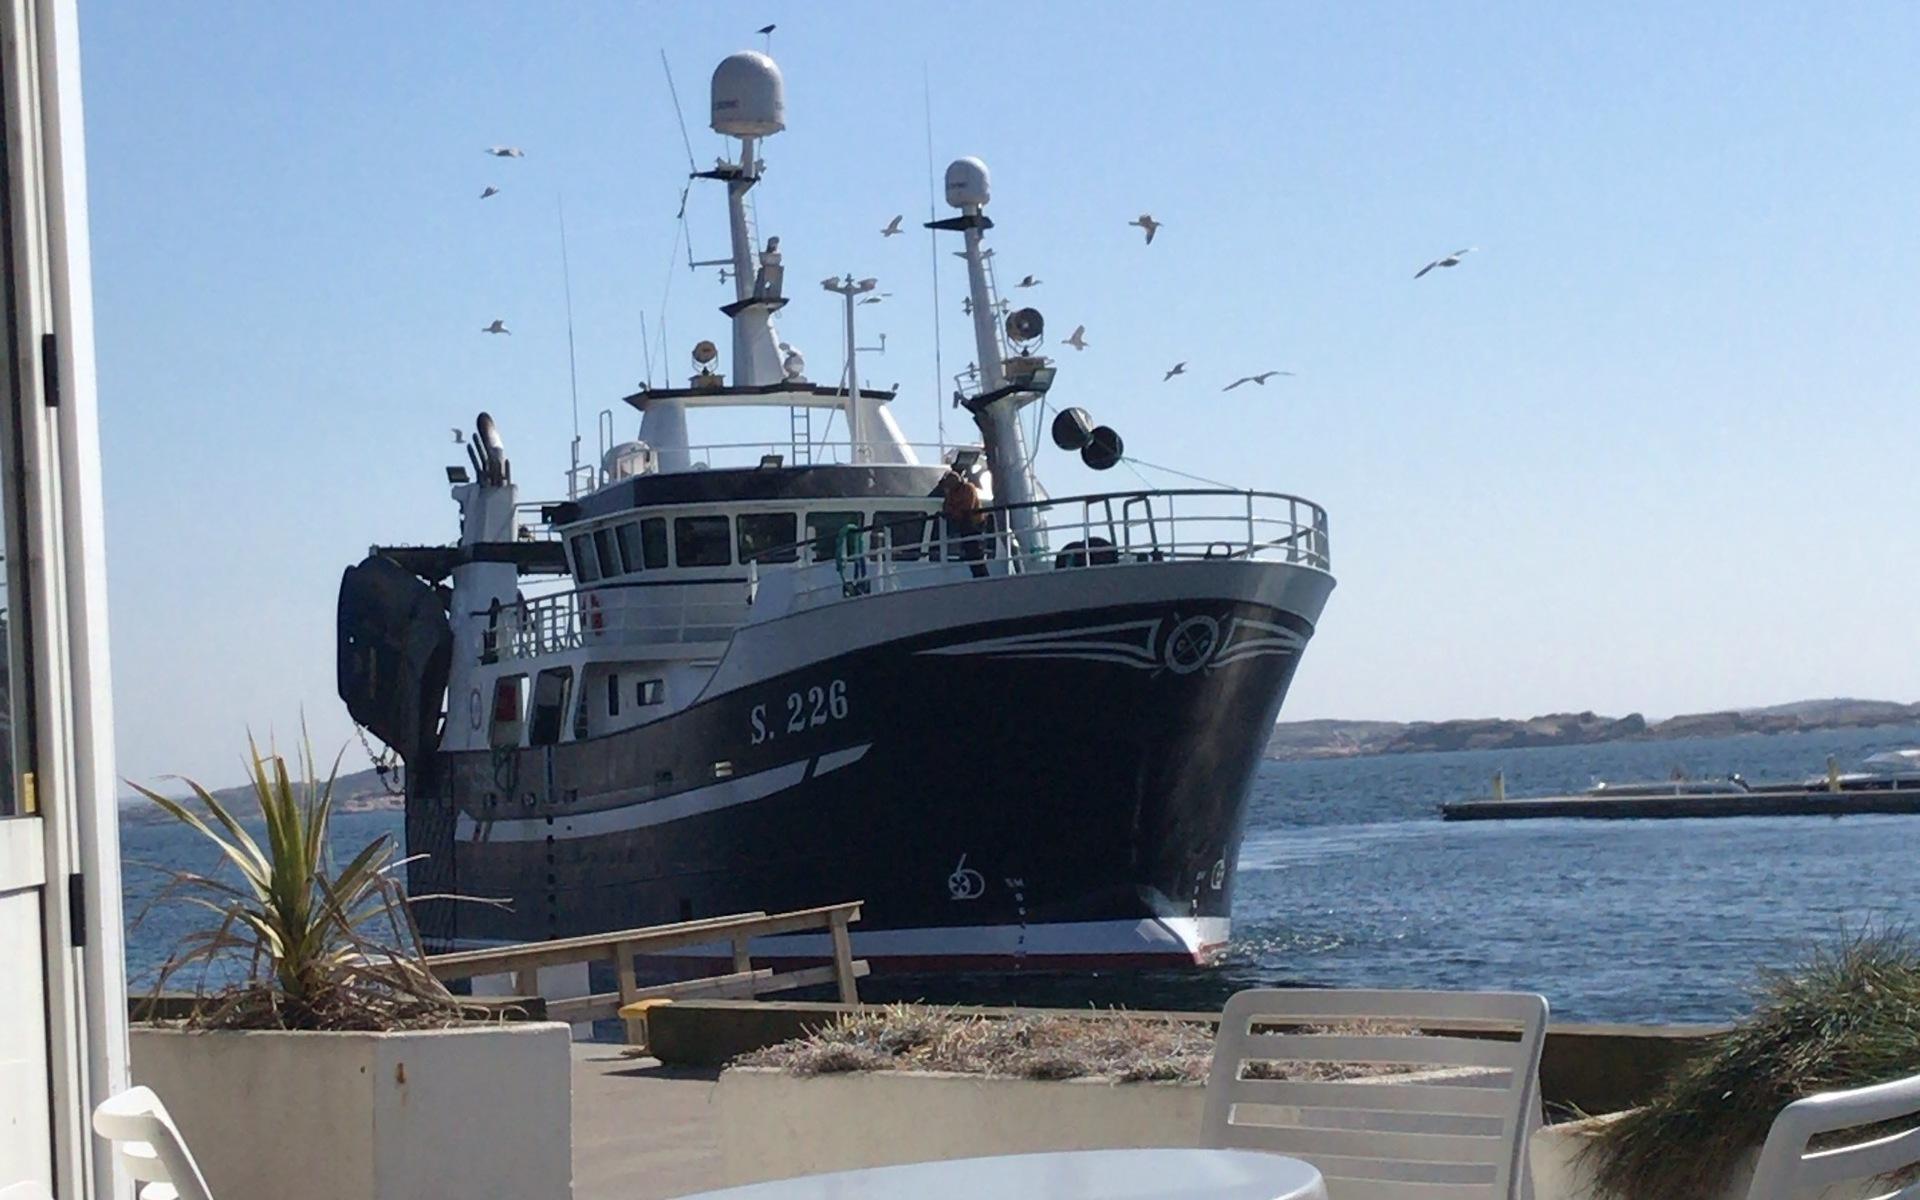 Årets första utefika på Smögen när den danska fiskebåten kommer iland med sprallfärska räkor 